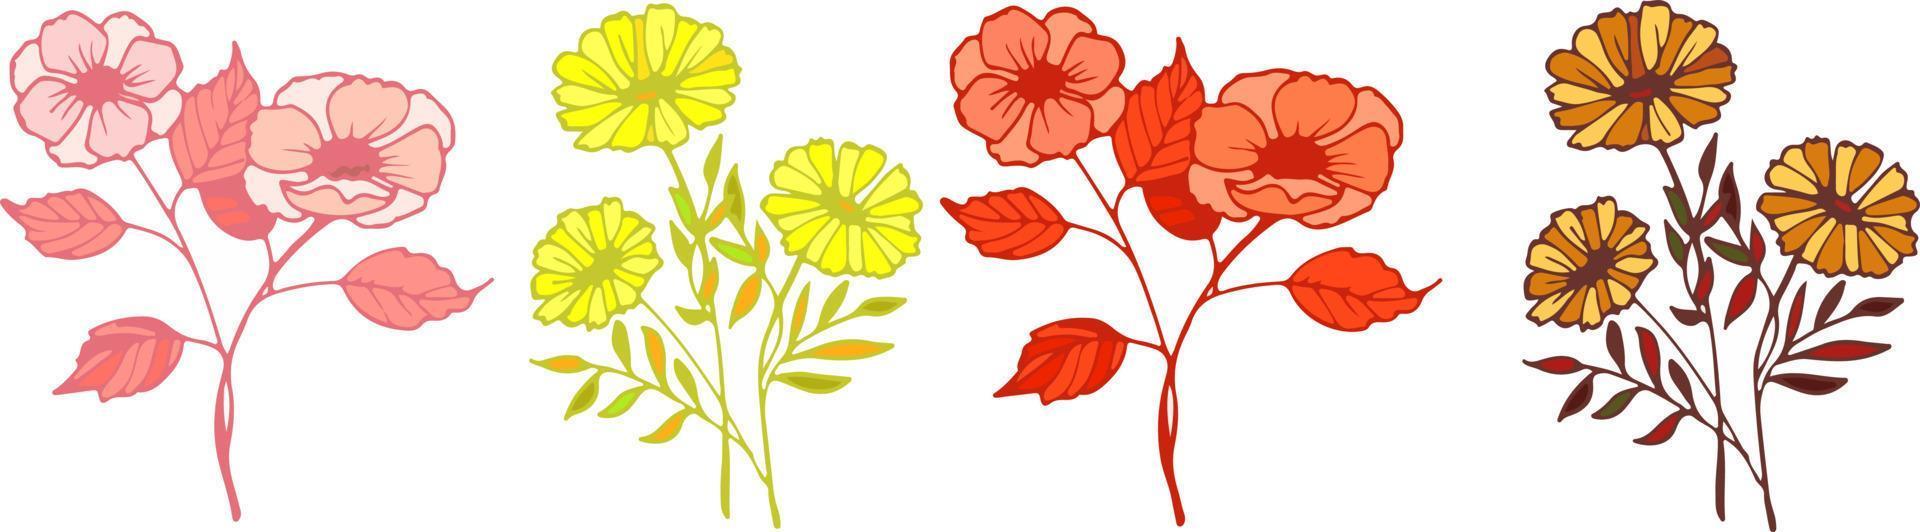 lindas flores desabrochando multicoloridas e borda de folhas. ilustração vetorial plana botânica de primavera em fundo branco vetor